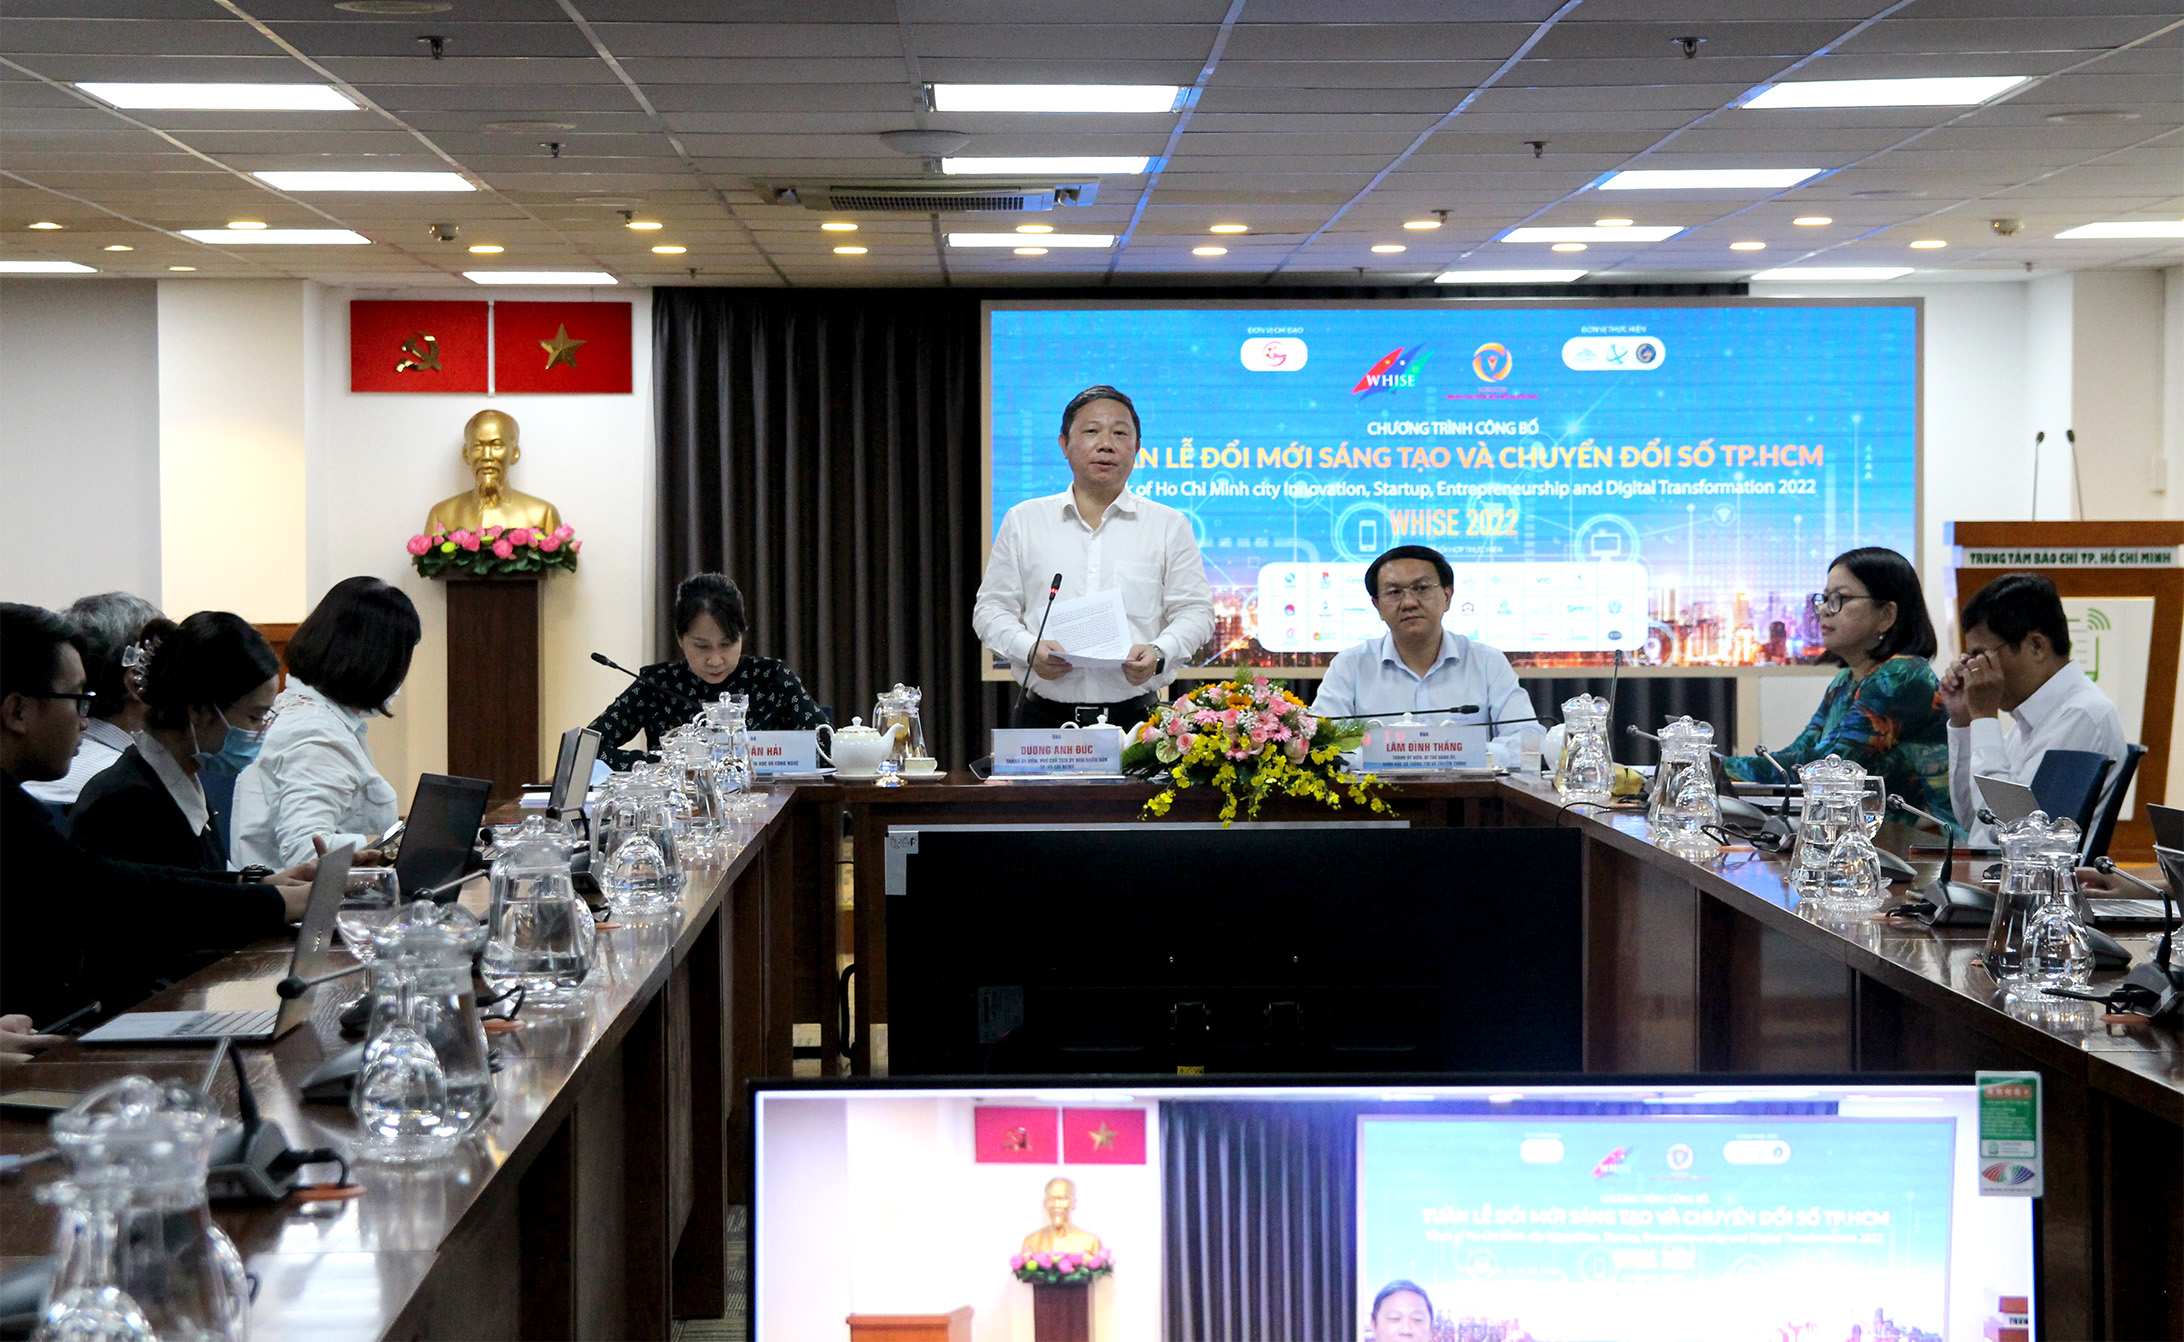 Đồng chí Dương Anh Đức, Phó Chủ tịch UBND TP. Hồ Chí Minh phát biểu tại buổi họp báo công bố 